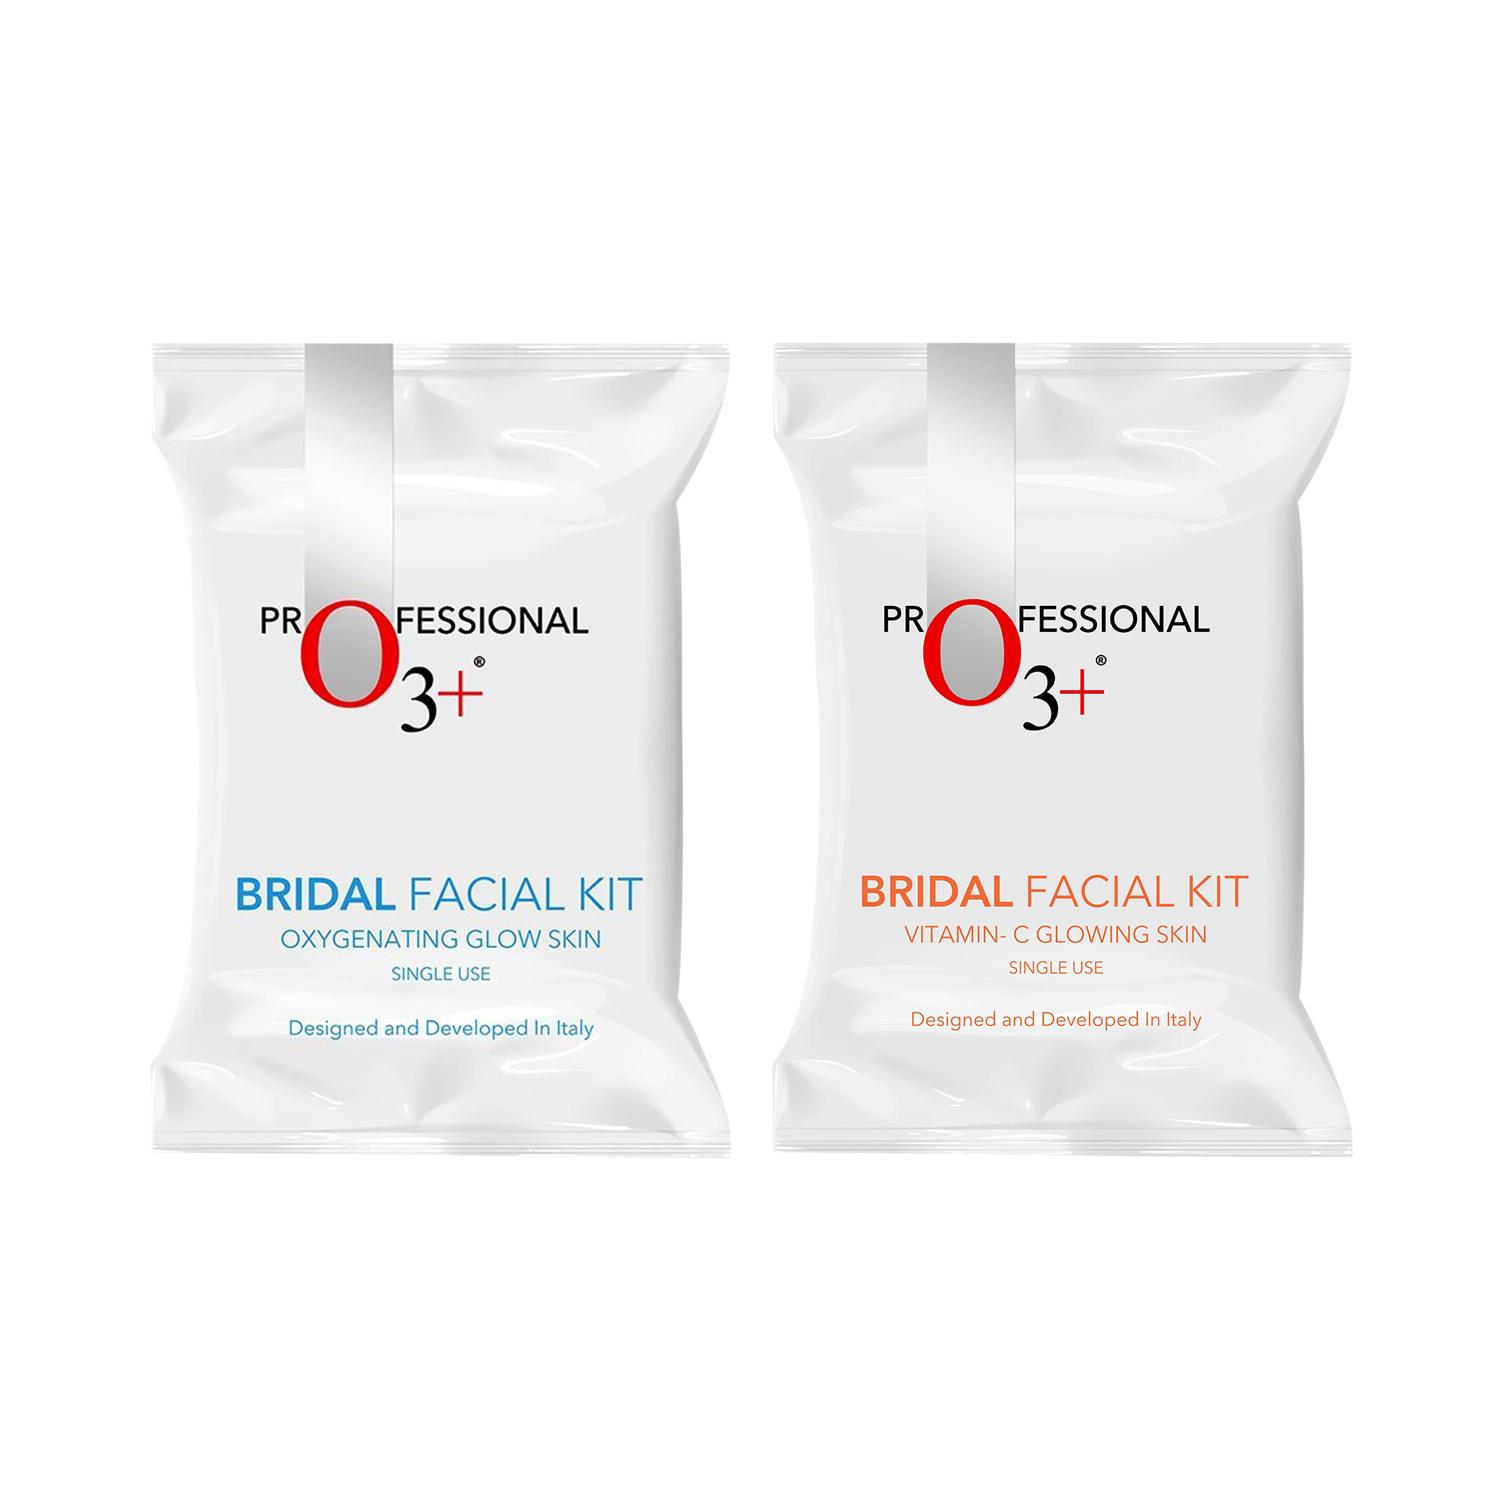 O3+ | O3+ Bridal Facial Kit Vitamin C Glowing Skin & Bridal Oxygenating Glow Skin Facial Kit - (81g) Combo